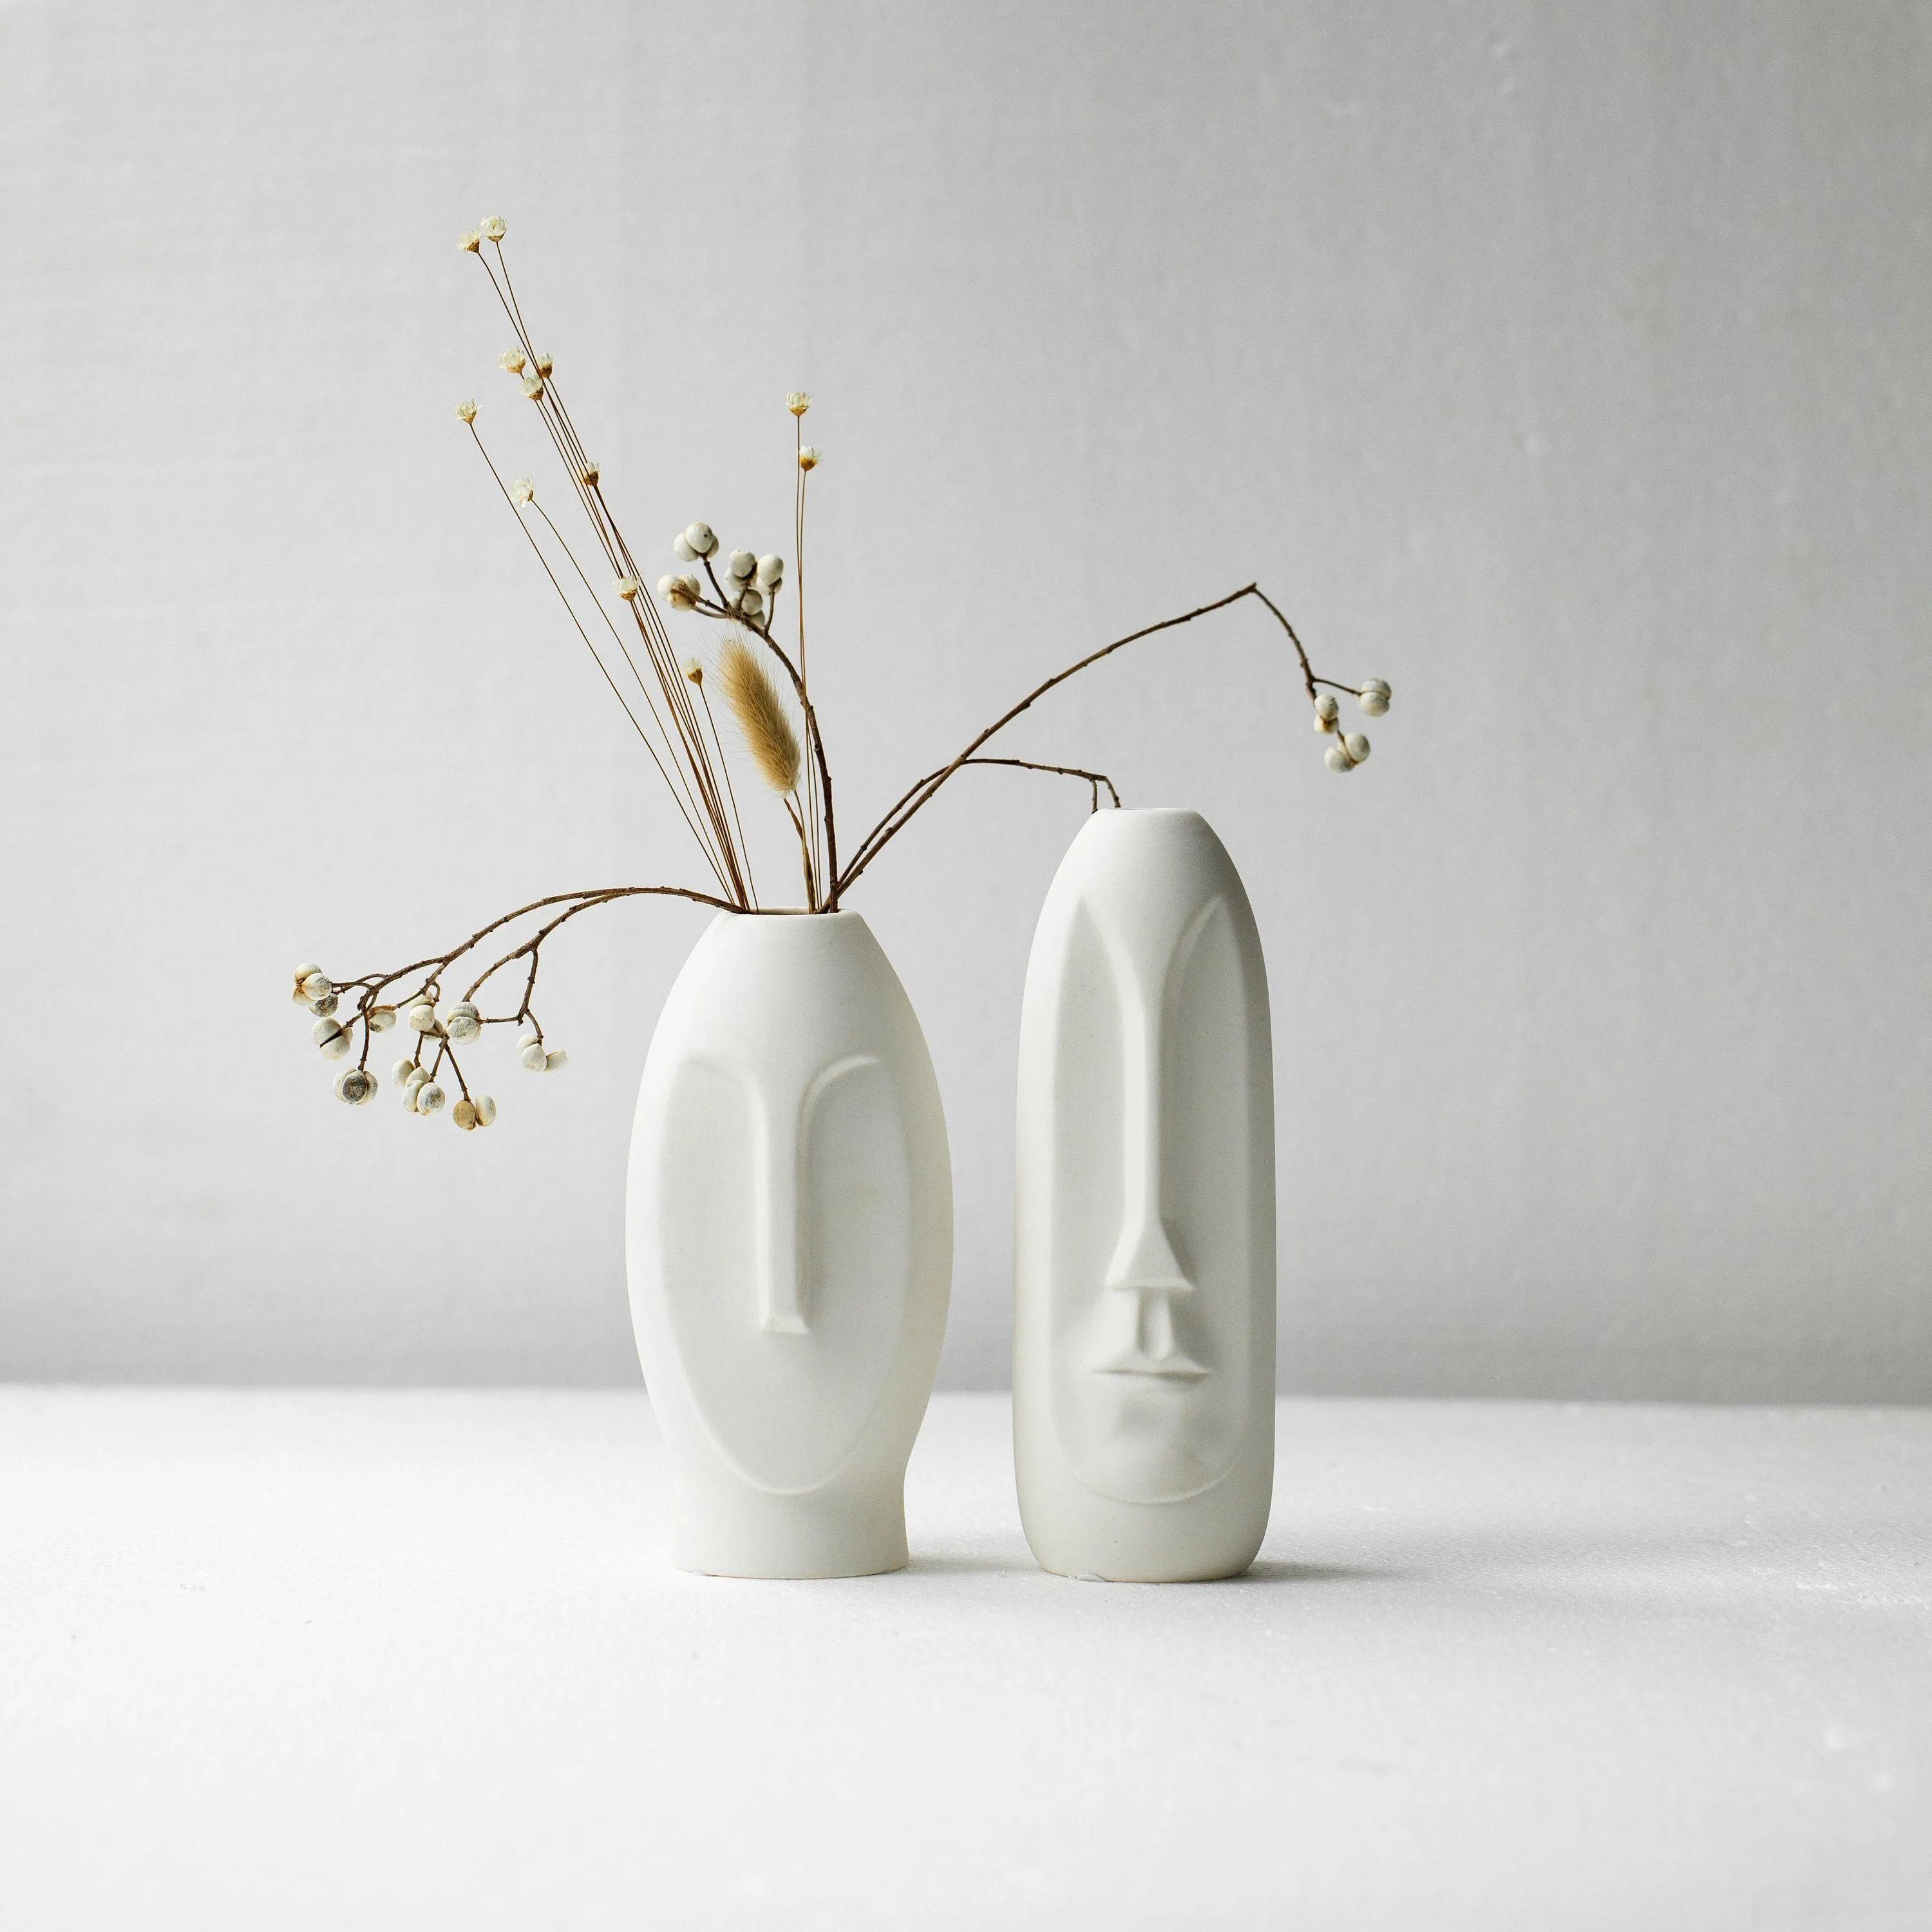 Wazony zestaw 2 twarz wazon minimalistyczne pampas nowoczesne białe ręcznie robione ceramiczne nordyckie dekoracje Scpture Scptural Drop dostawa dom ogród DHV5N